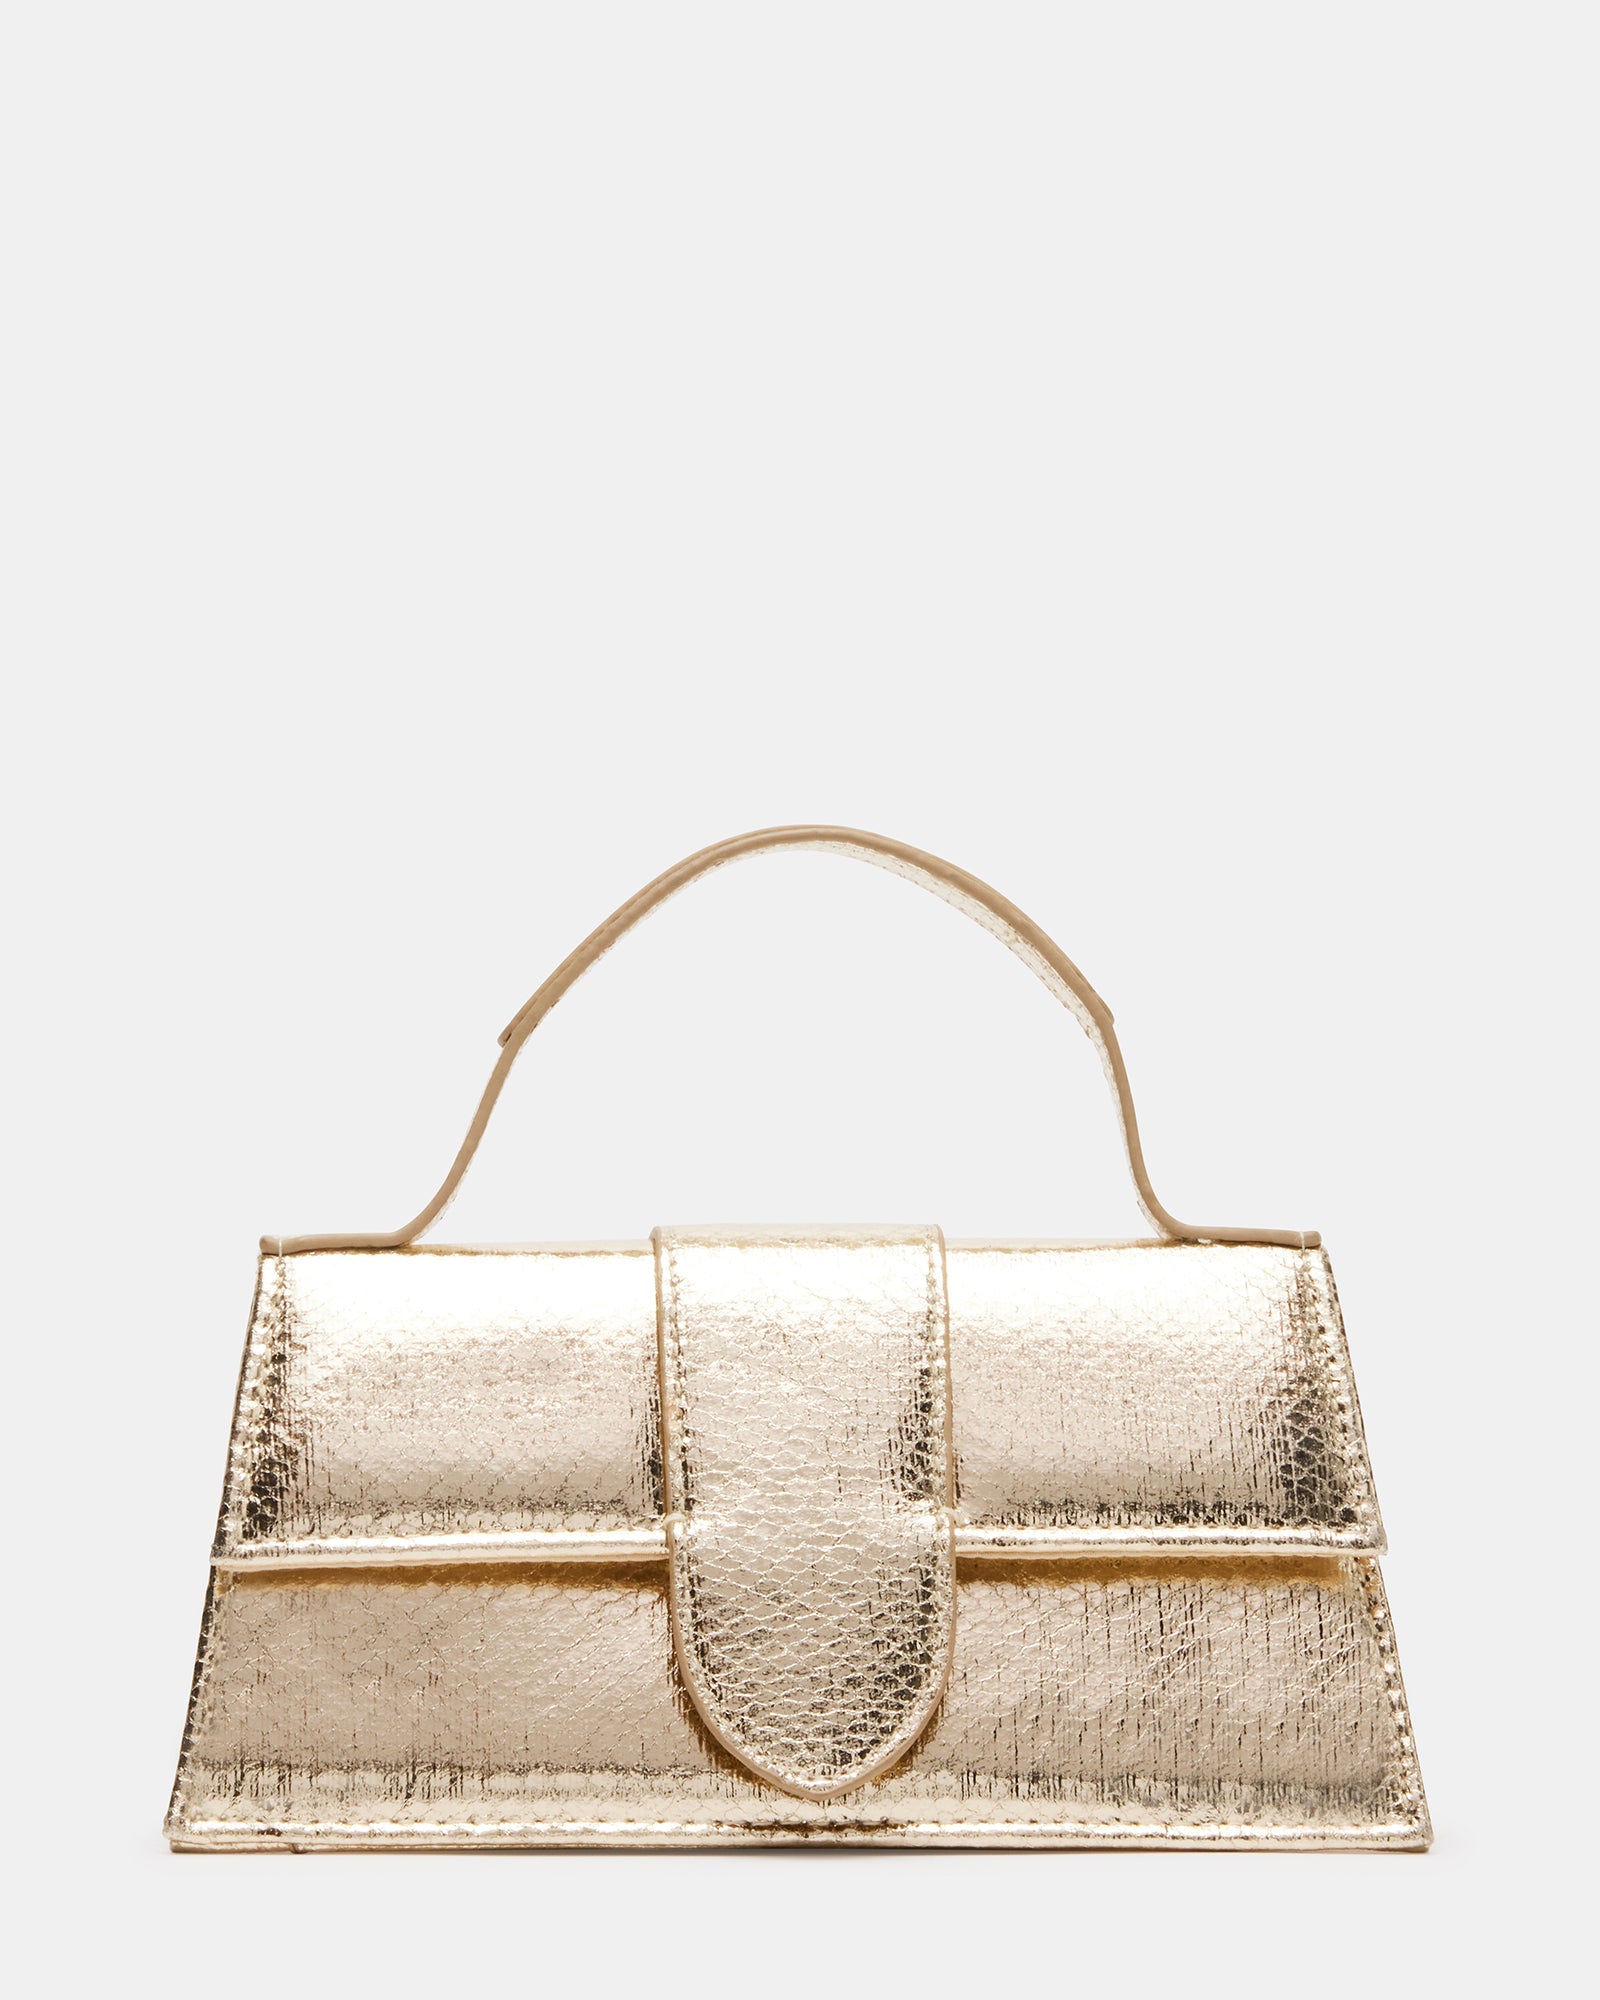 ARLAN Gold Snake Trapezoidal Satchel Bag | Women's Mini Bags – Steve Madden